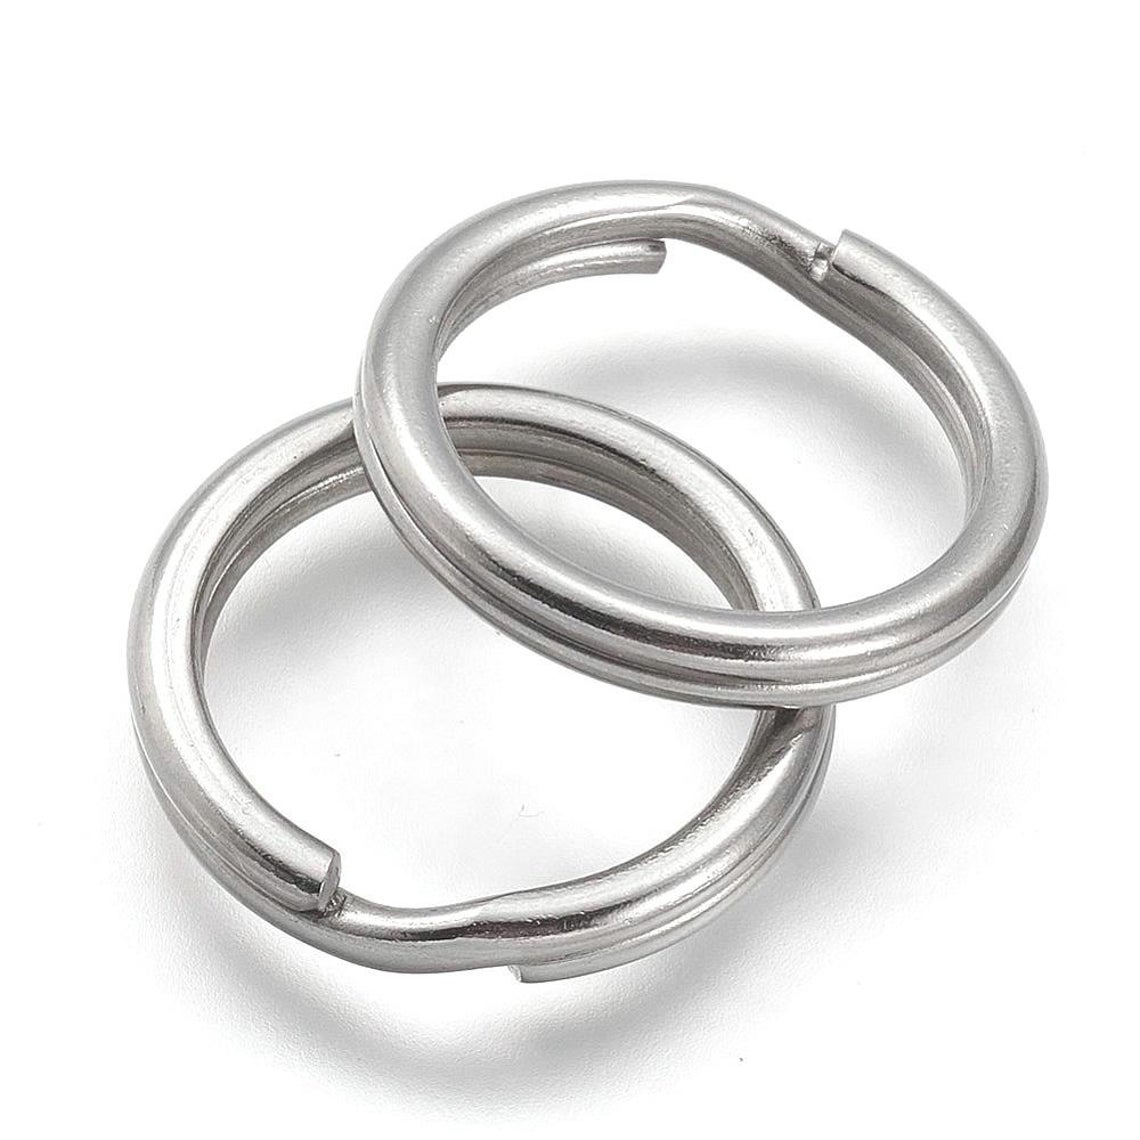 J013 - 10 pcs. 304 Stainless Steel Split Rings Key Rings - 20mm (0.79 Stainless Steel Split Rings For Jewelry